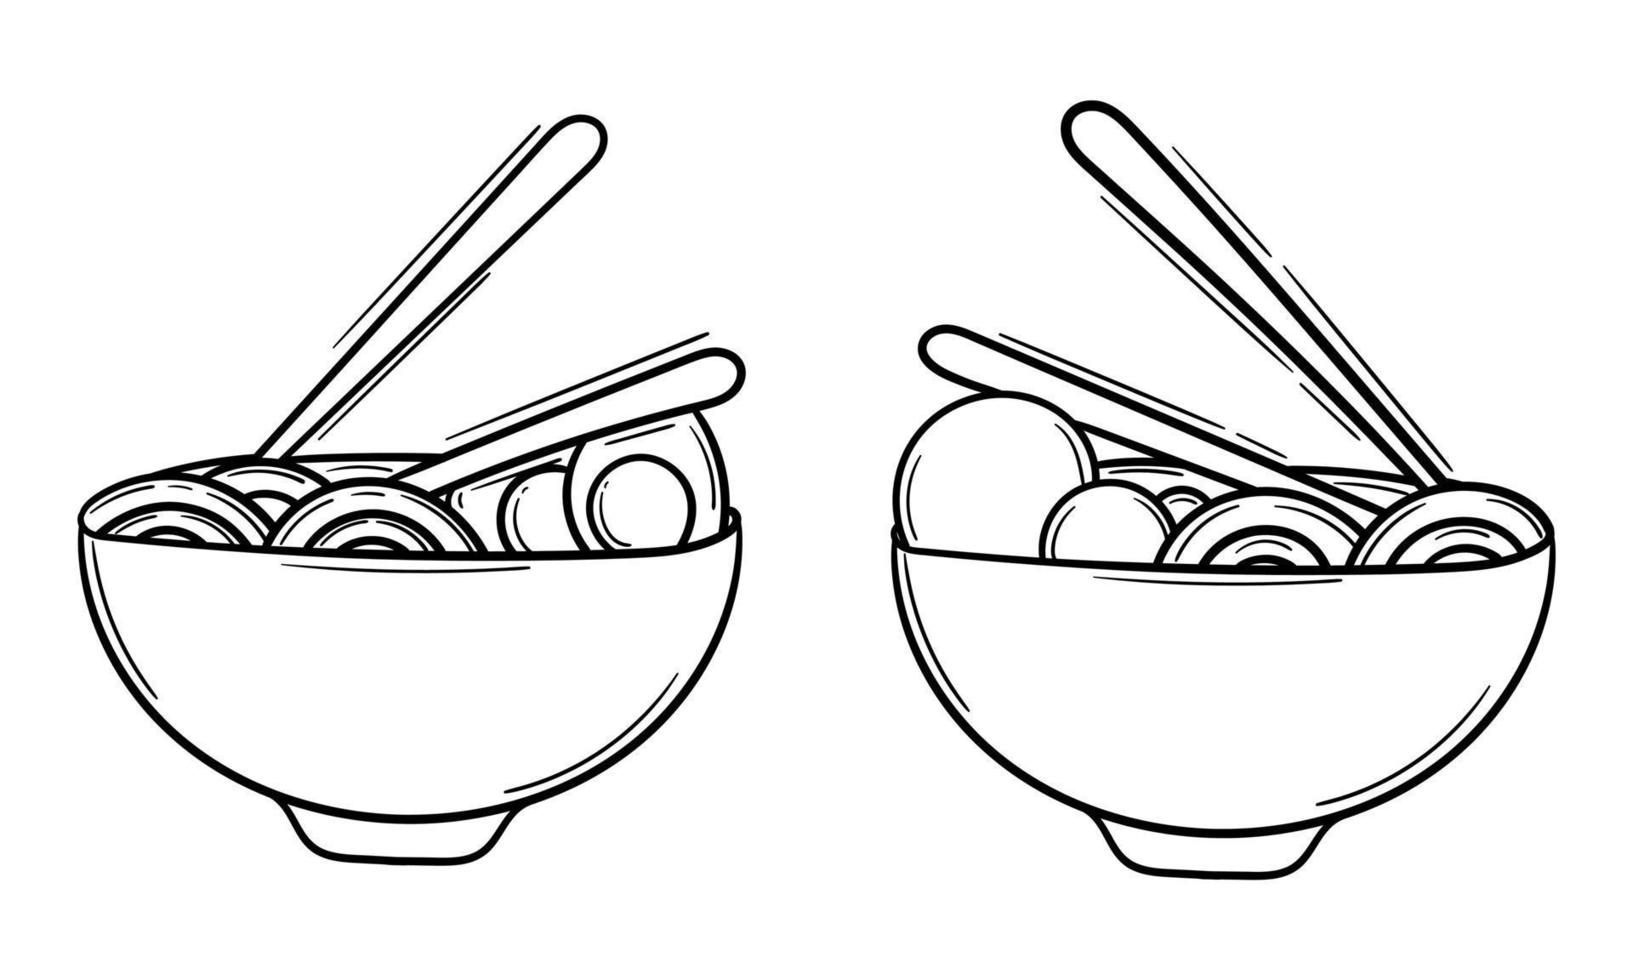 ilustración dibujada a mano de fideos y huevos, y fideos y albóndigas vector